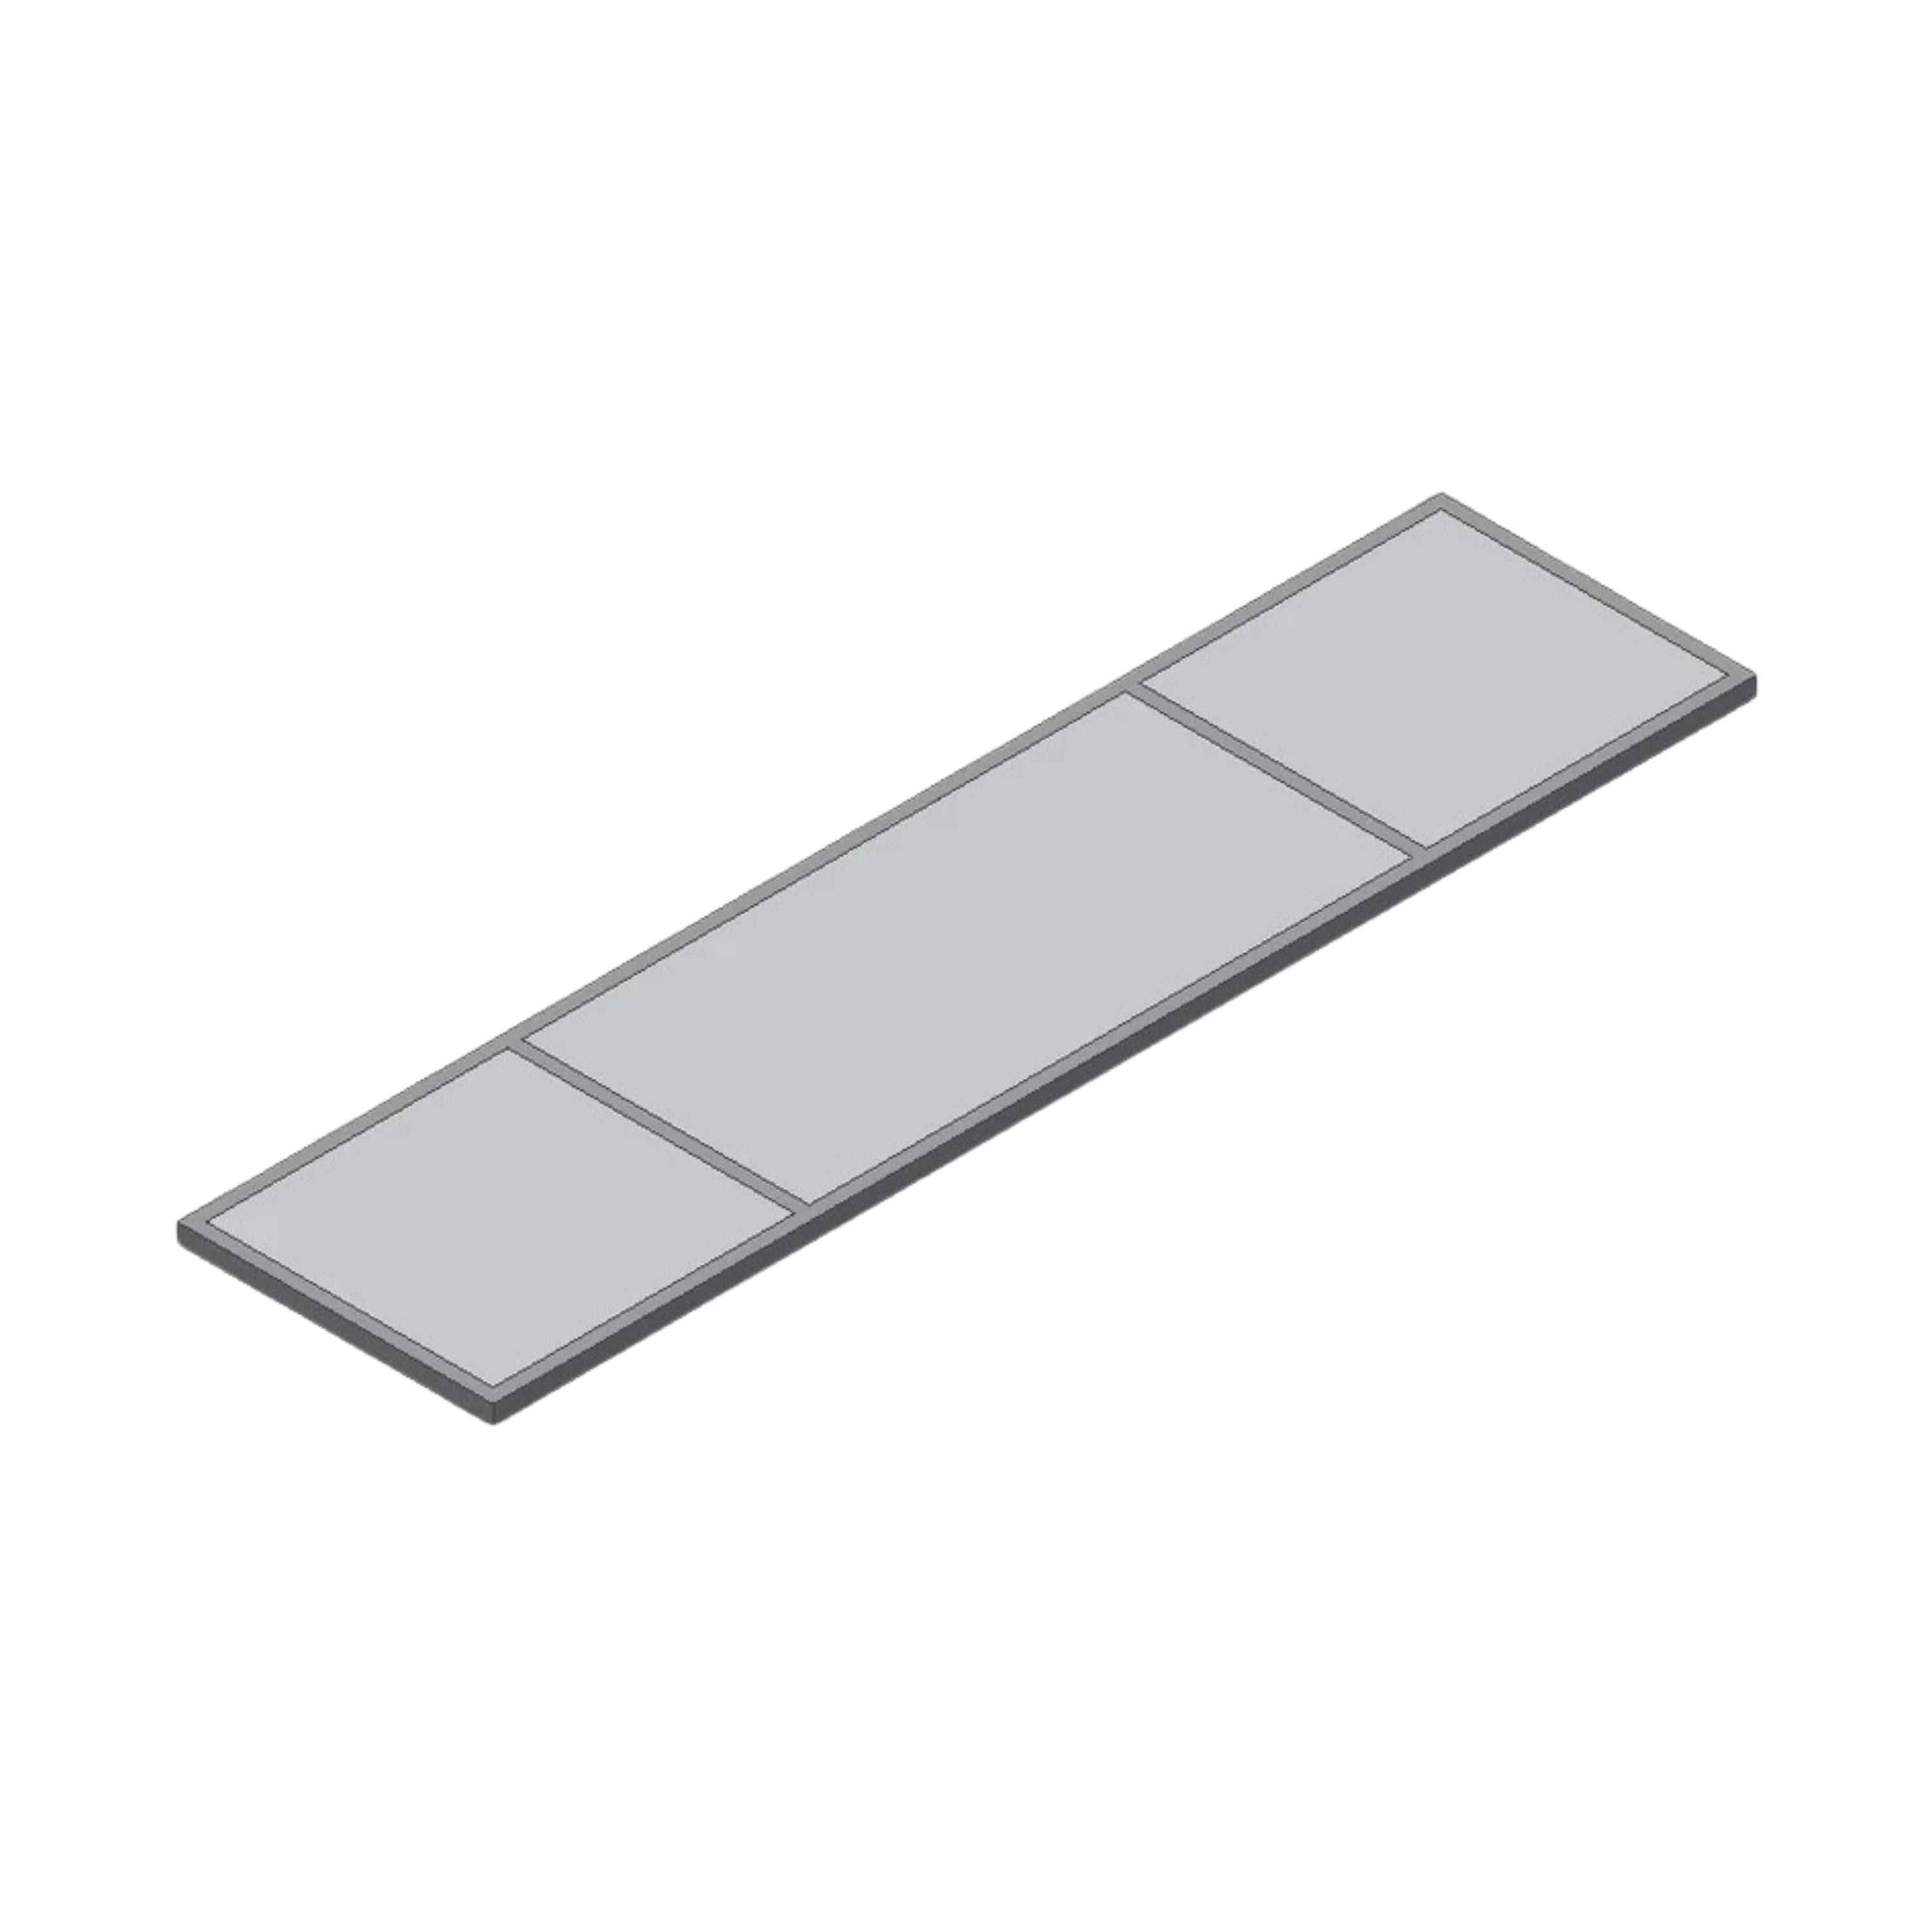 Deckenelement für den Einbau einer FFU ( Filter Fan Unit), Grösse: 656 x 2624 mm